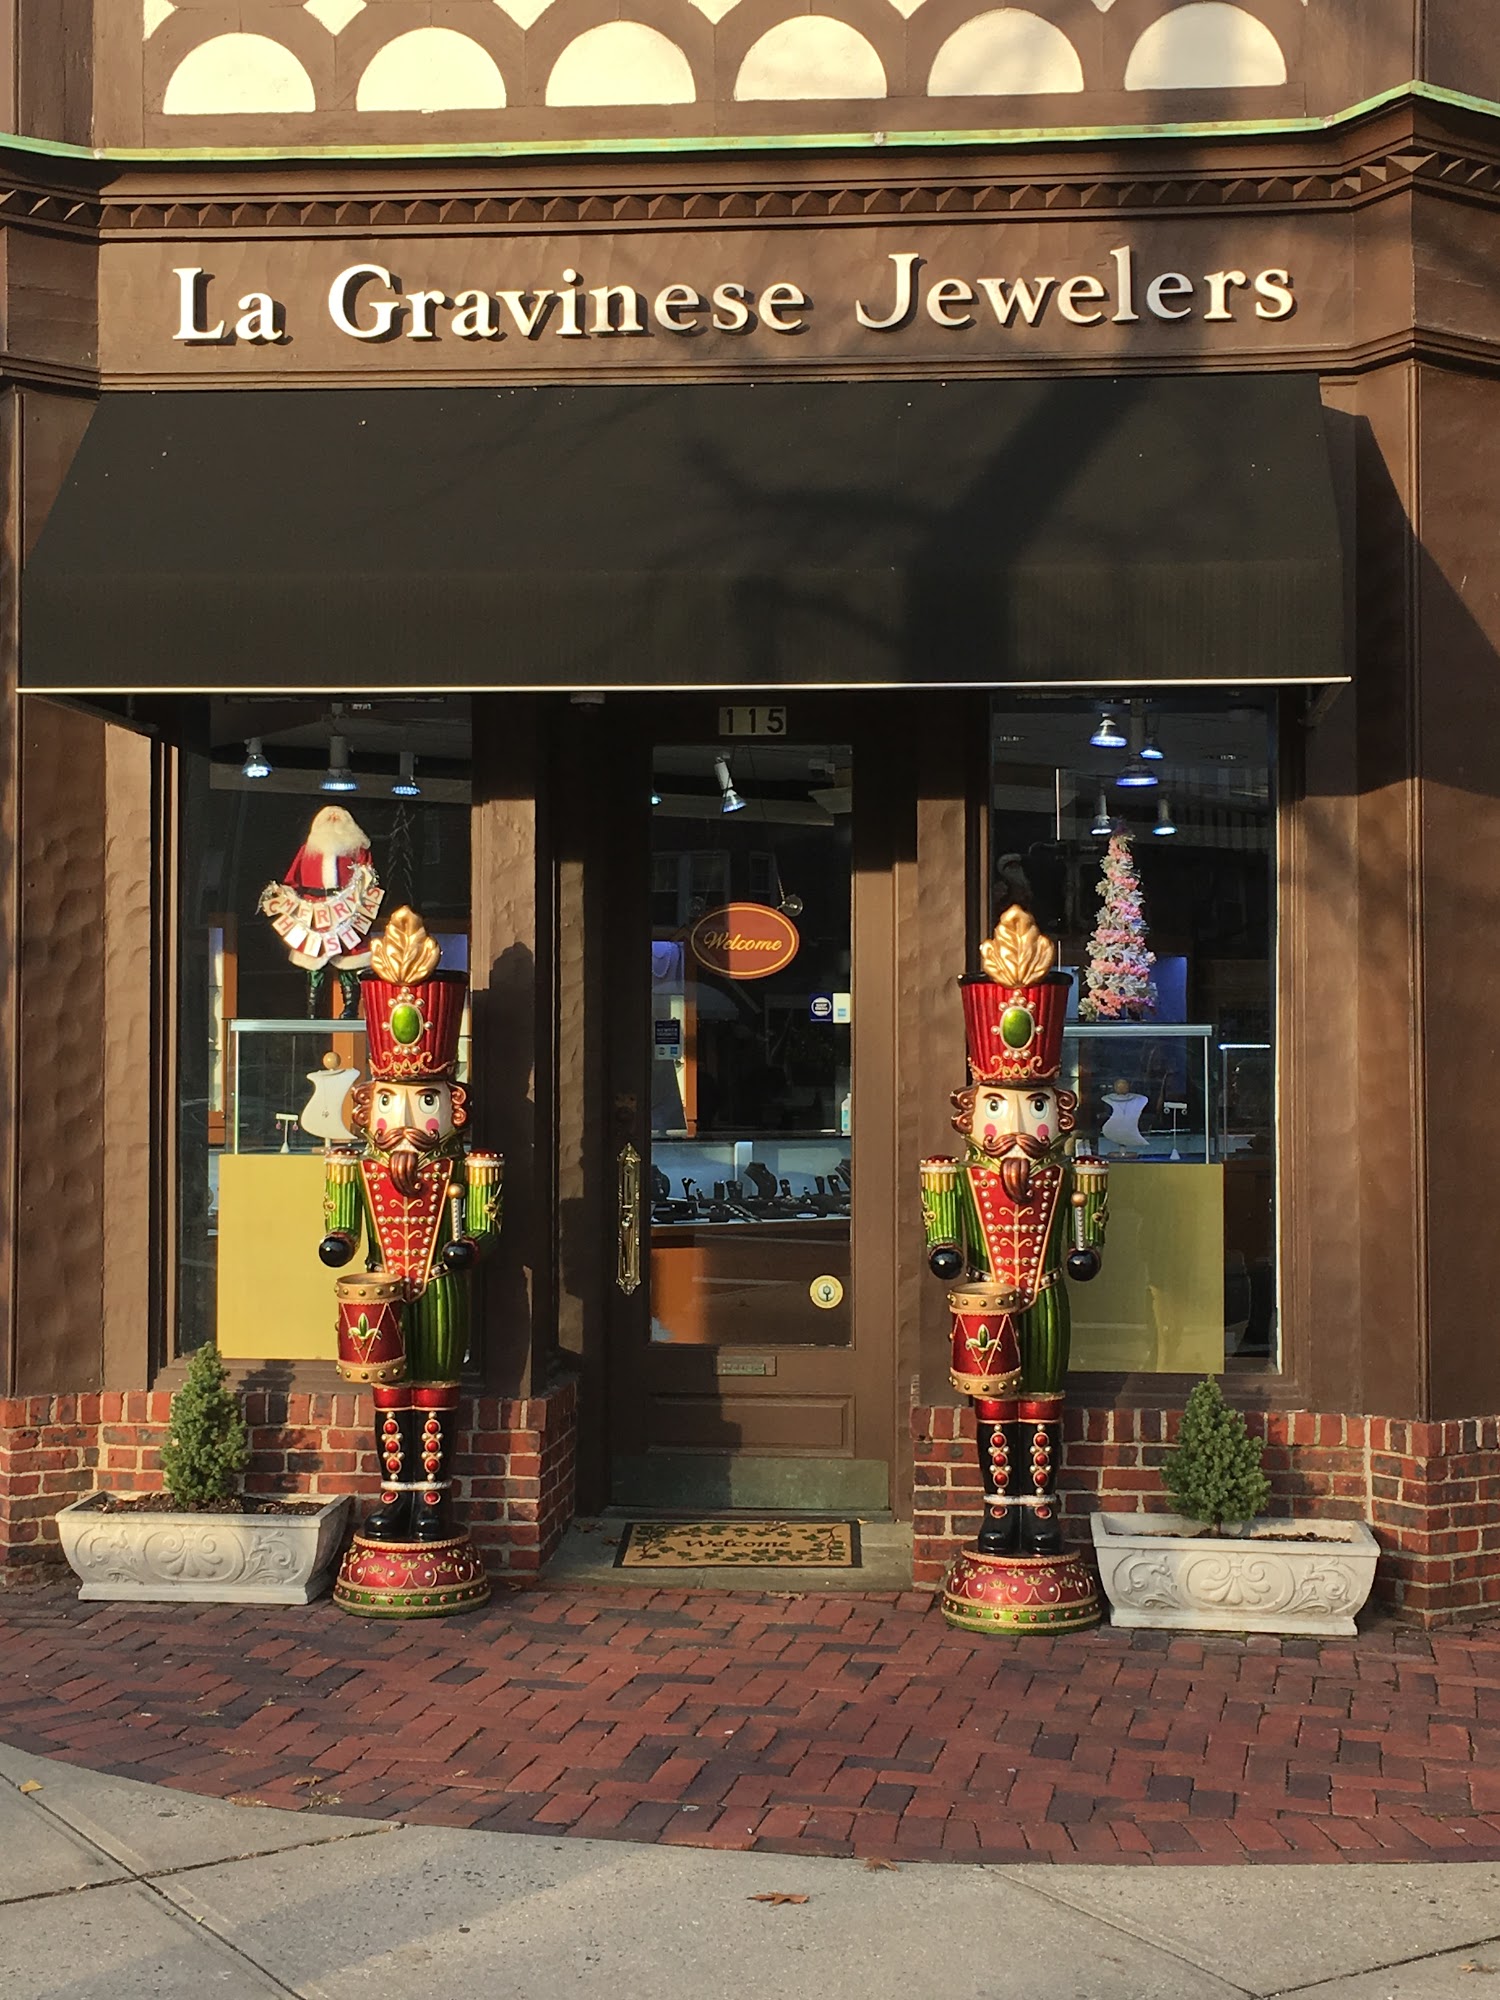 LaGravinese Jewelers